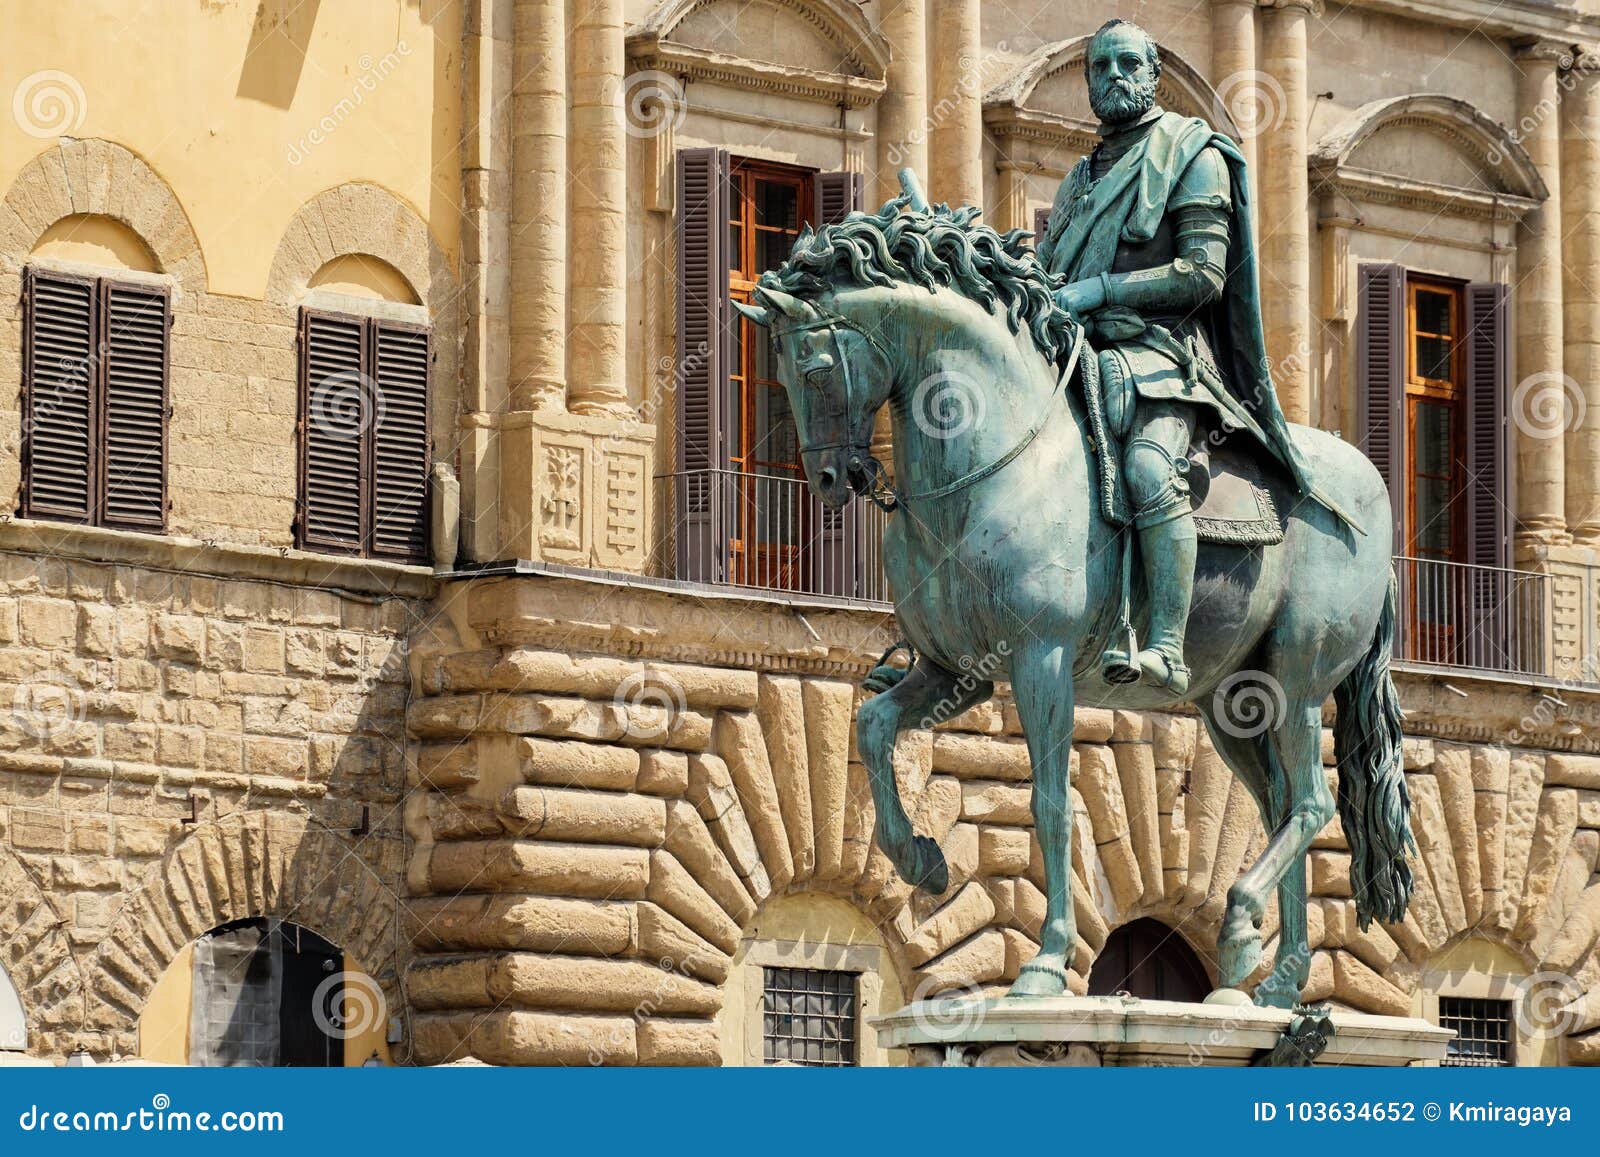 statue of cosimo i de medici at piazza della signoria in florence